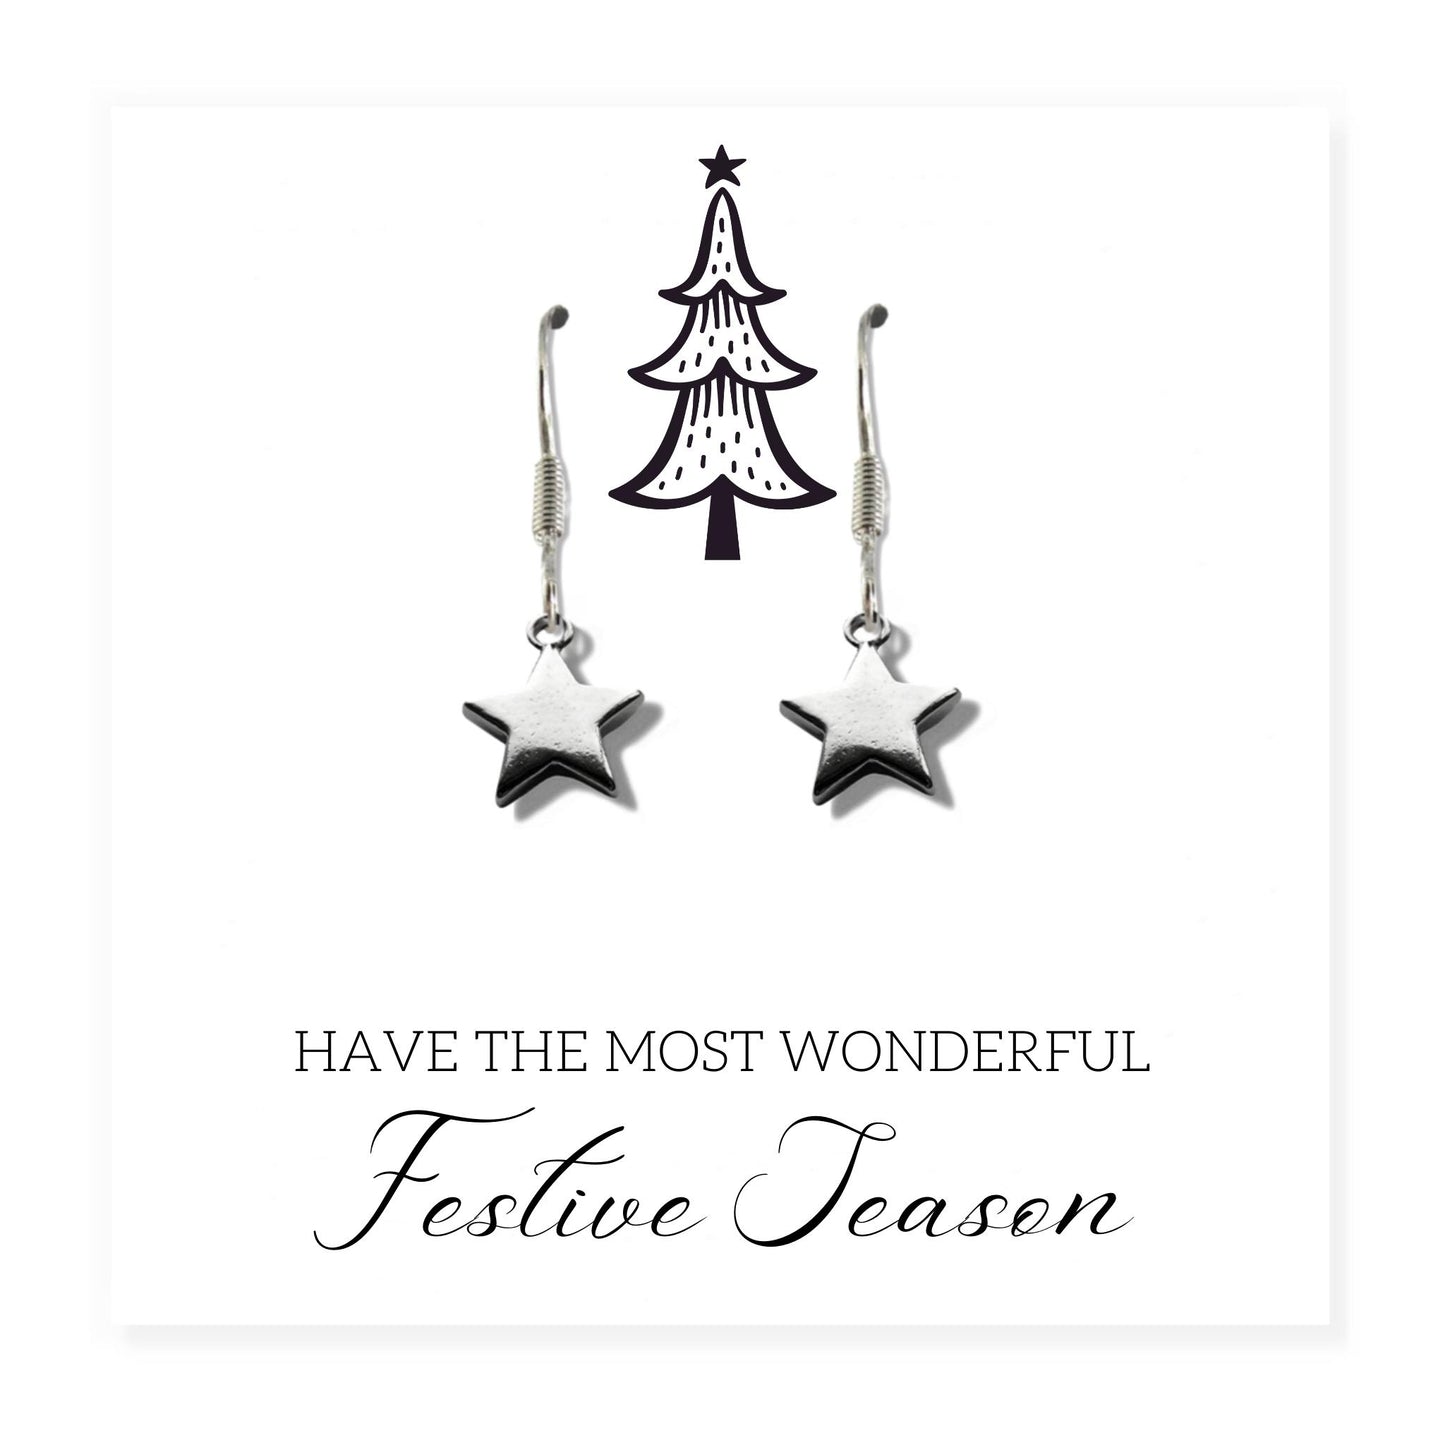 Silver Star Earrings - Festive Season Card Gift